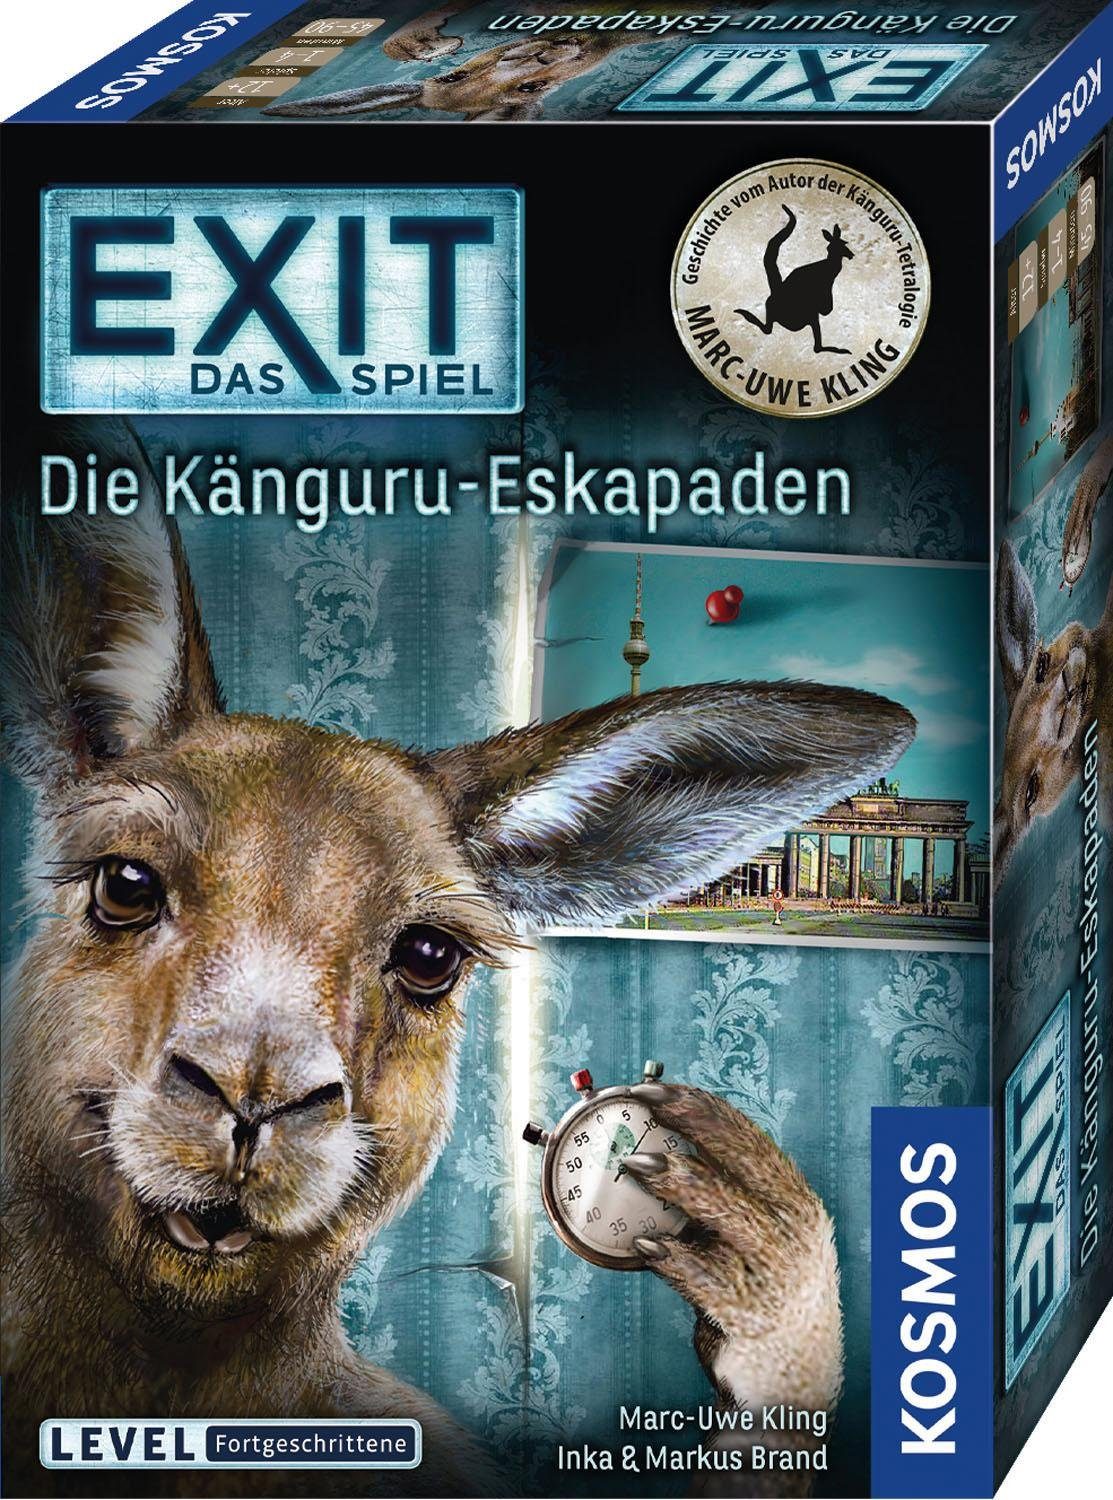 Spiel, Die - Kosmos in Känguru-Eskapaden, EXIT Germany Made